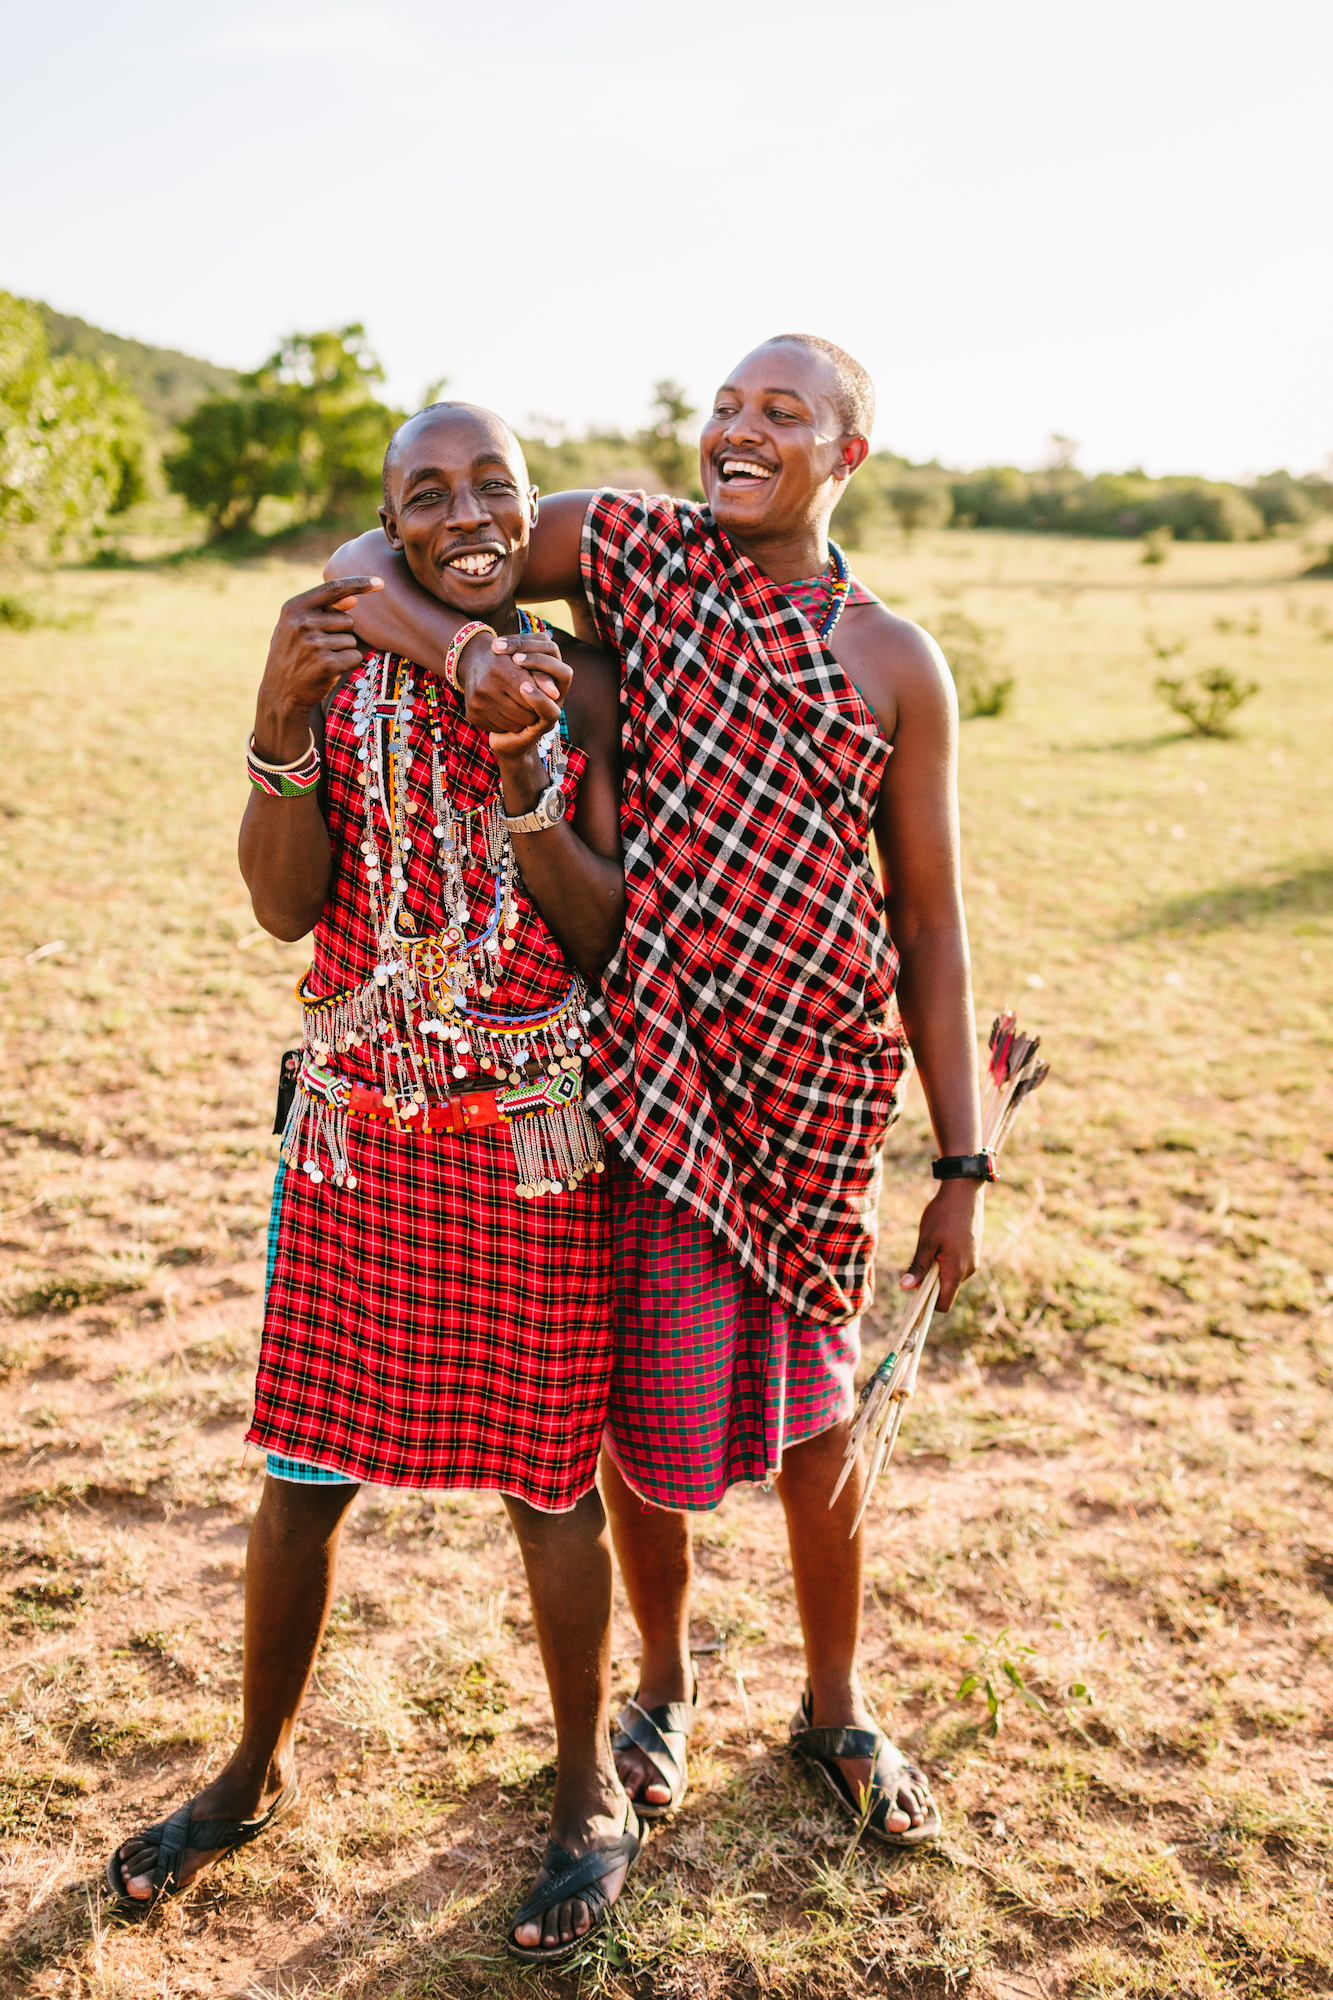 Two members of The Maasai in Kenya